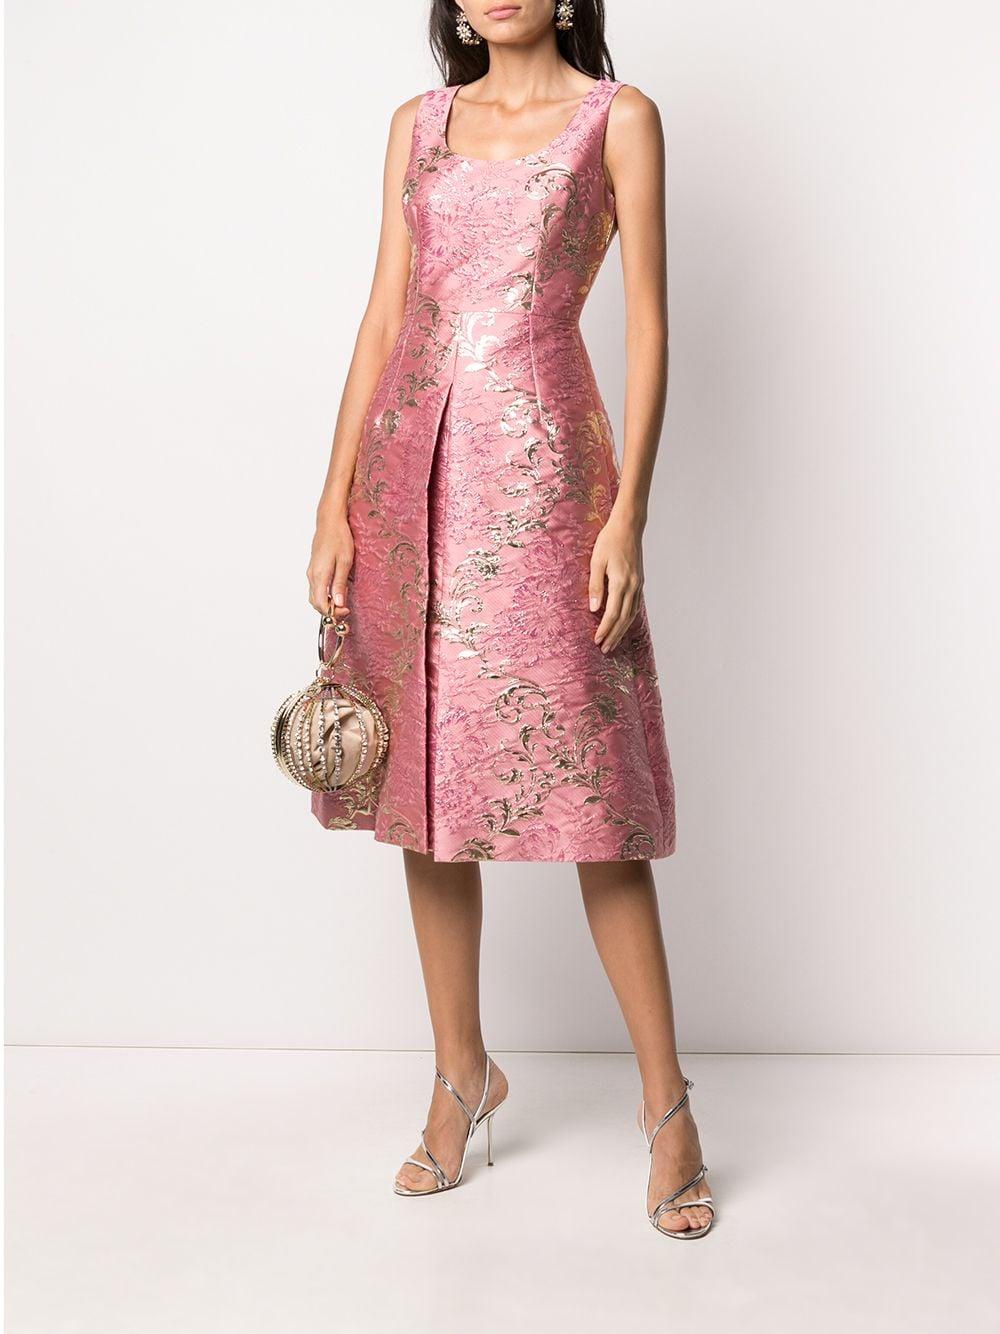 ☀ Gabbana Jacquard Floral Pattern Dress ...